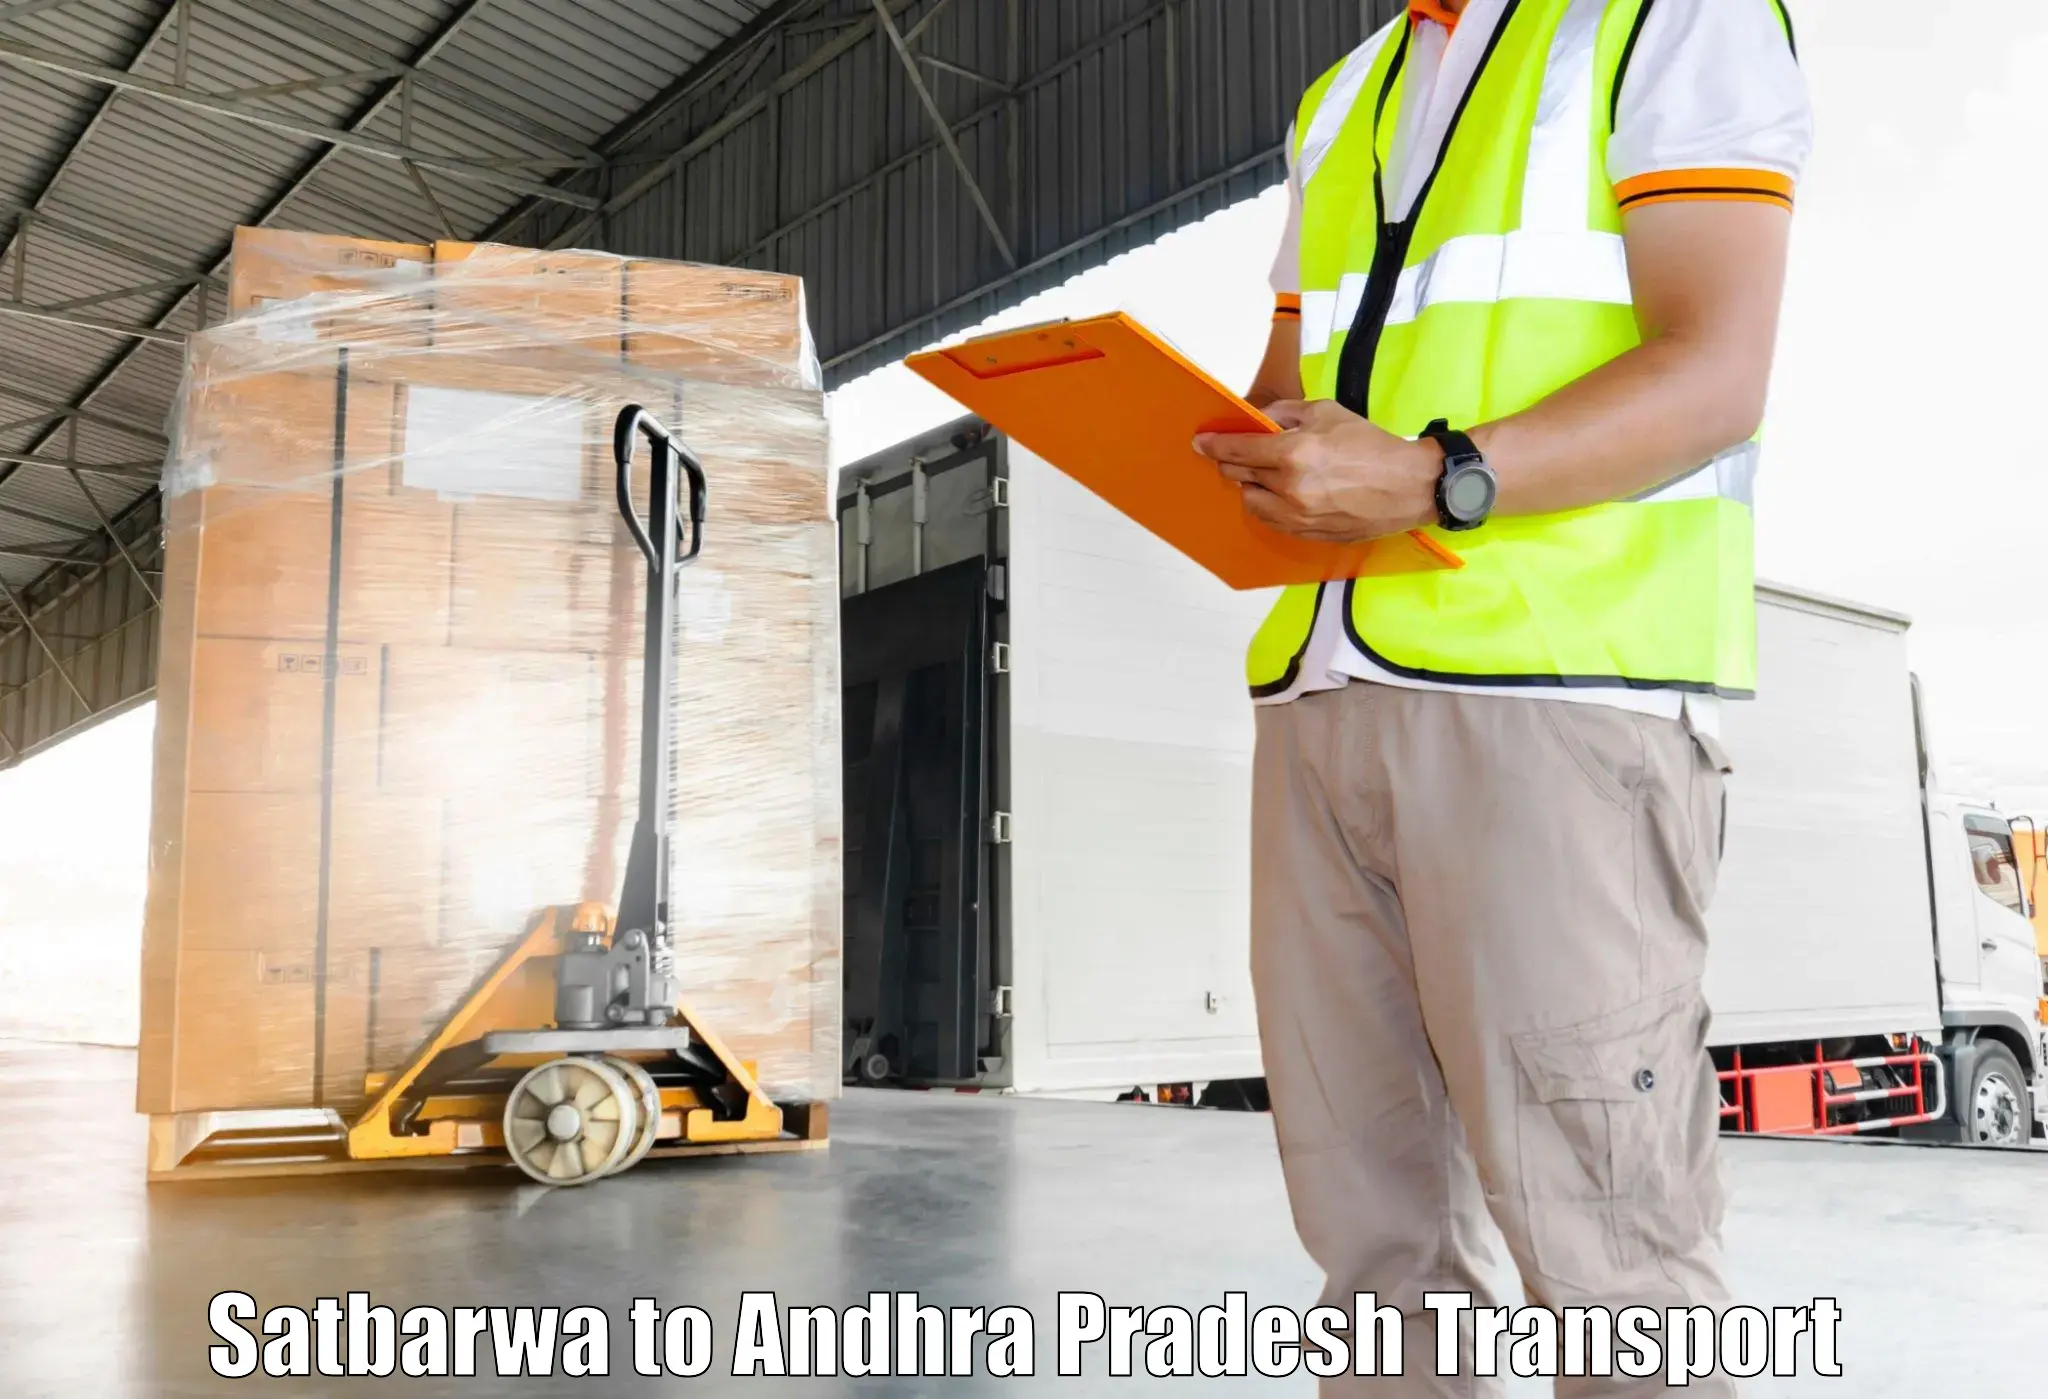 Furniture transport service Satbarwa to Narsipatnam